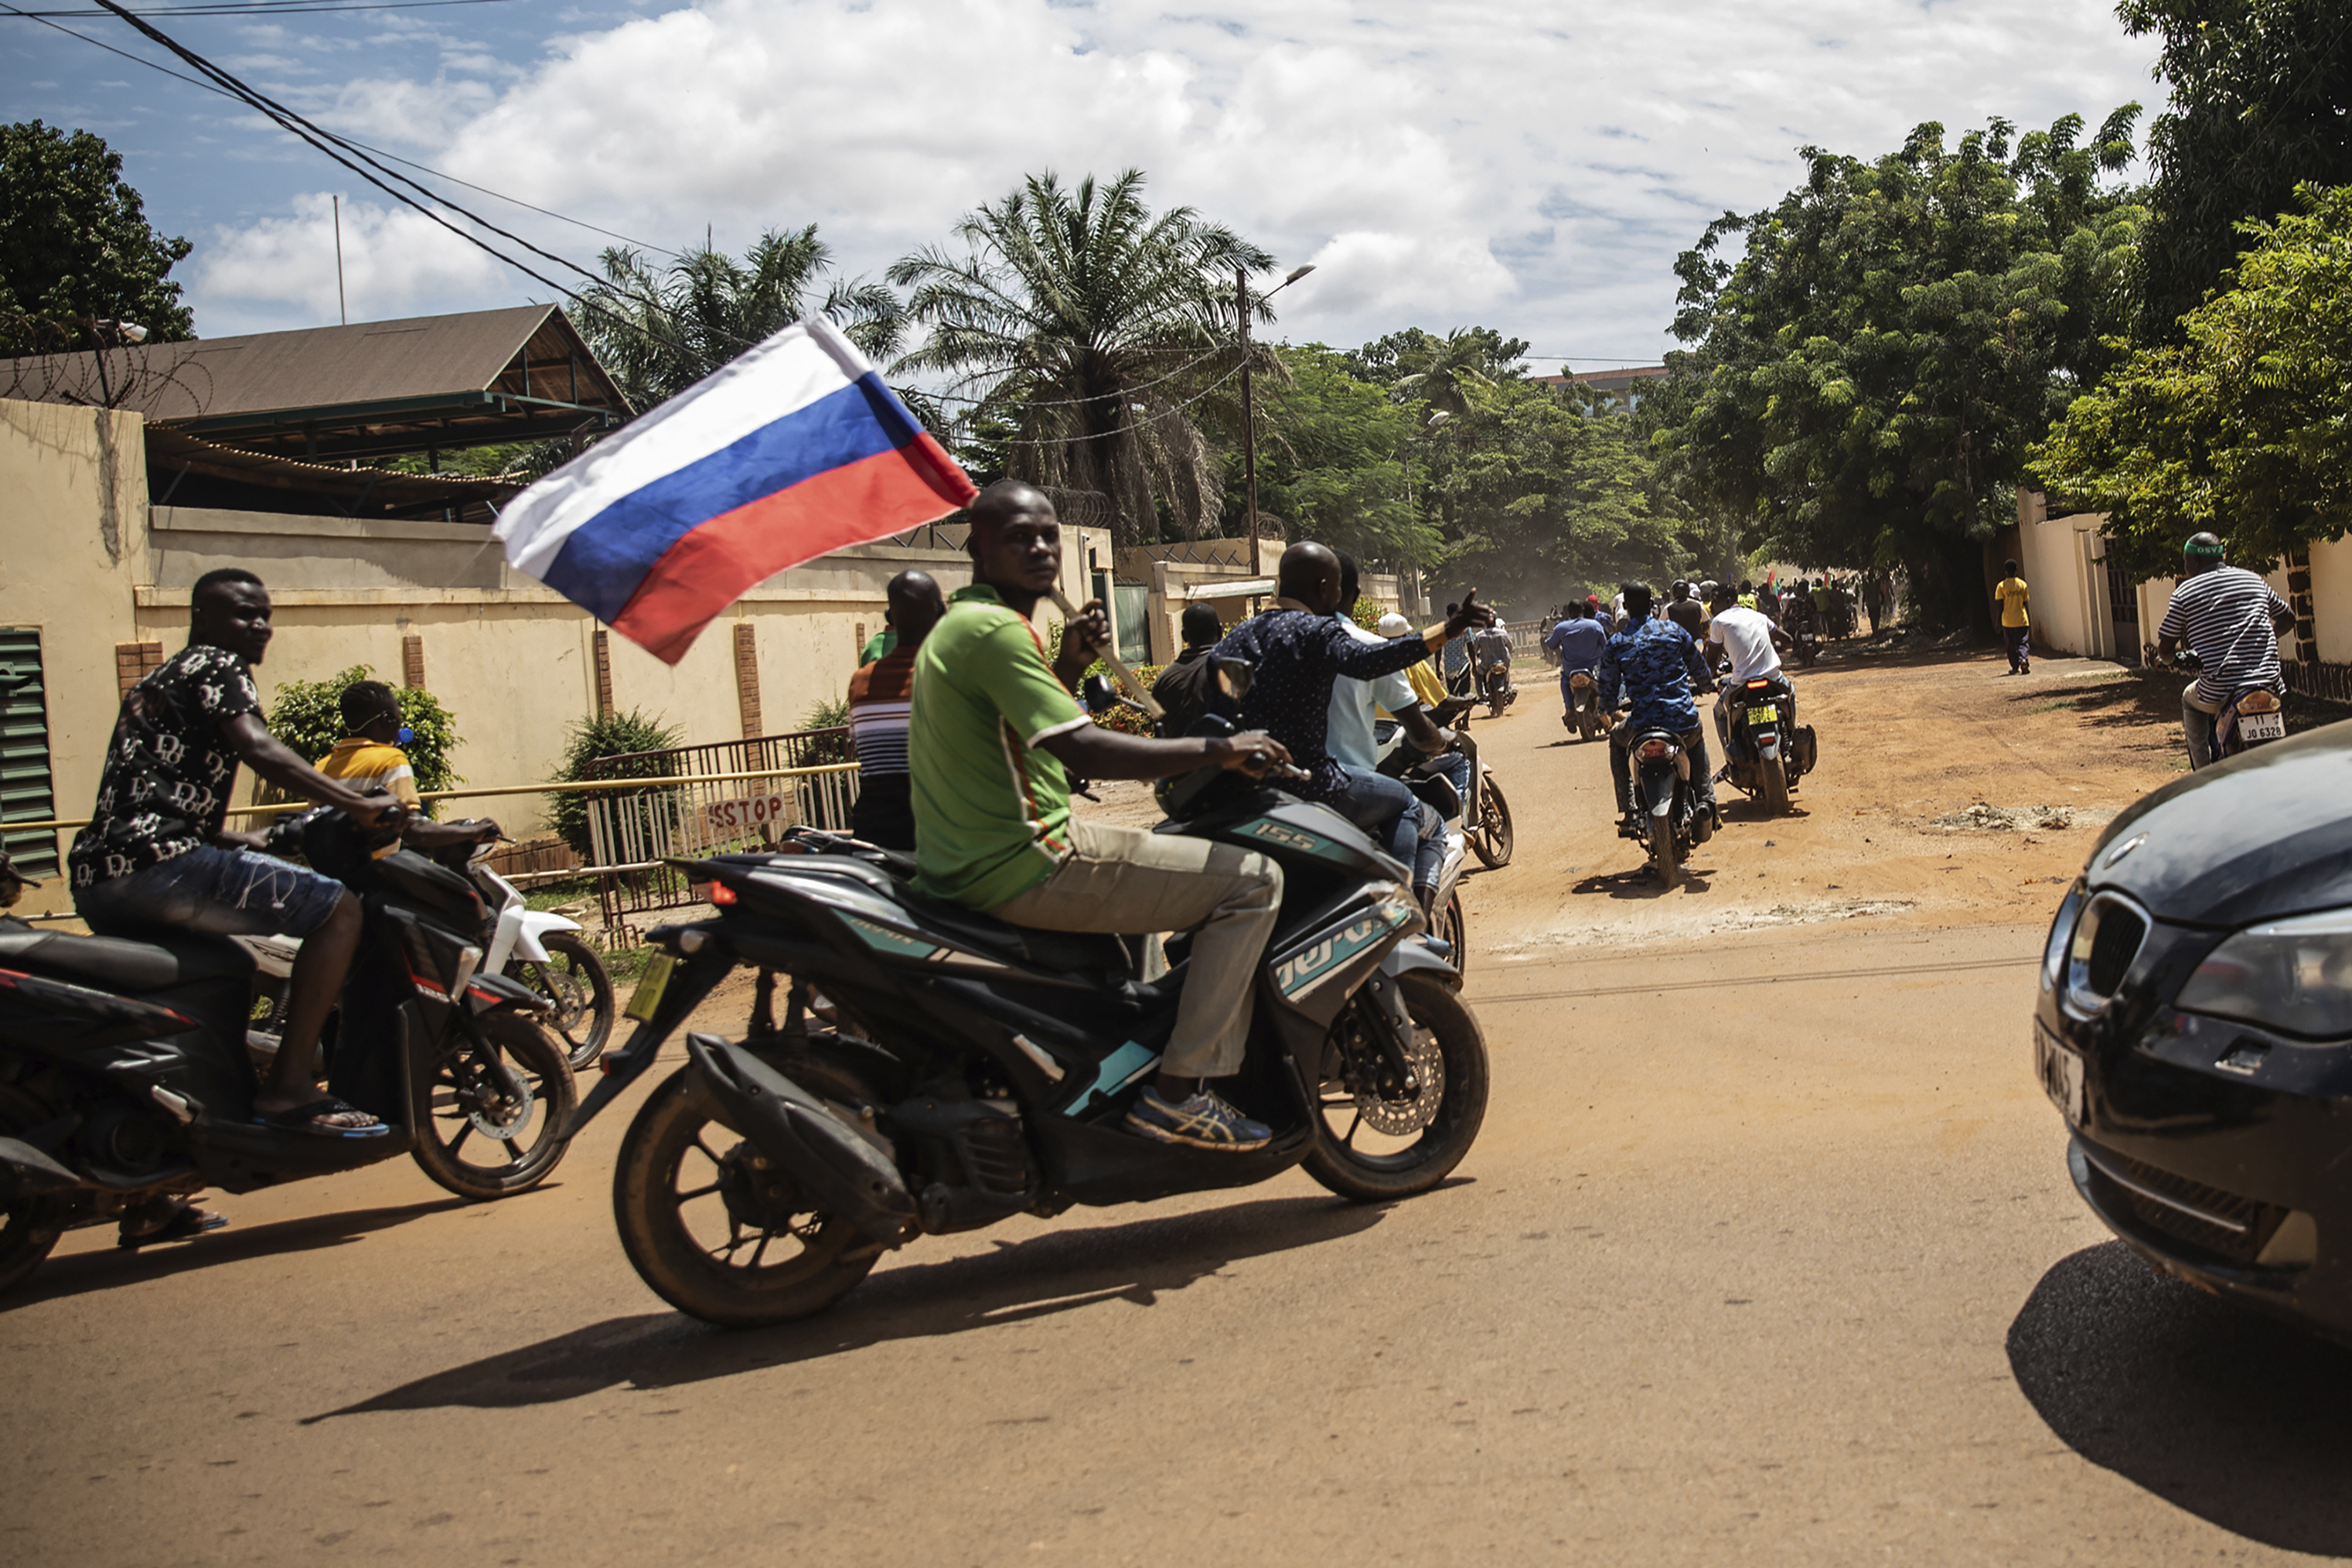 Eine weitere russische Flagge wird in den Straßen von Burkina Faso vorgeführt, während der russische Einfluss über Afrika hinwegfegt